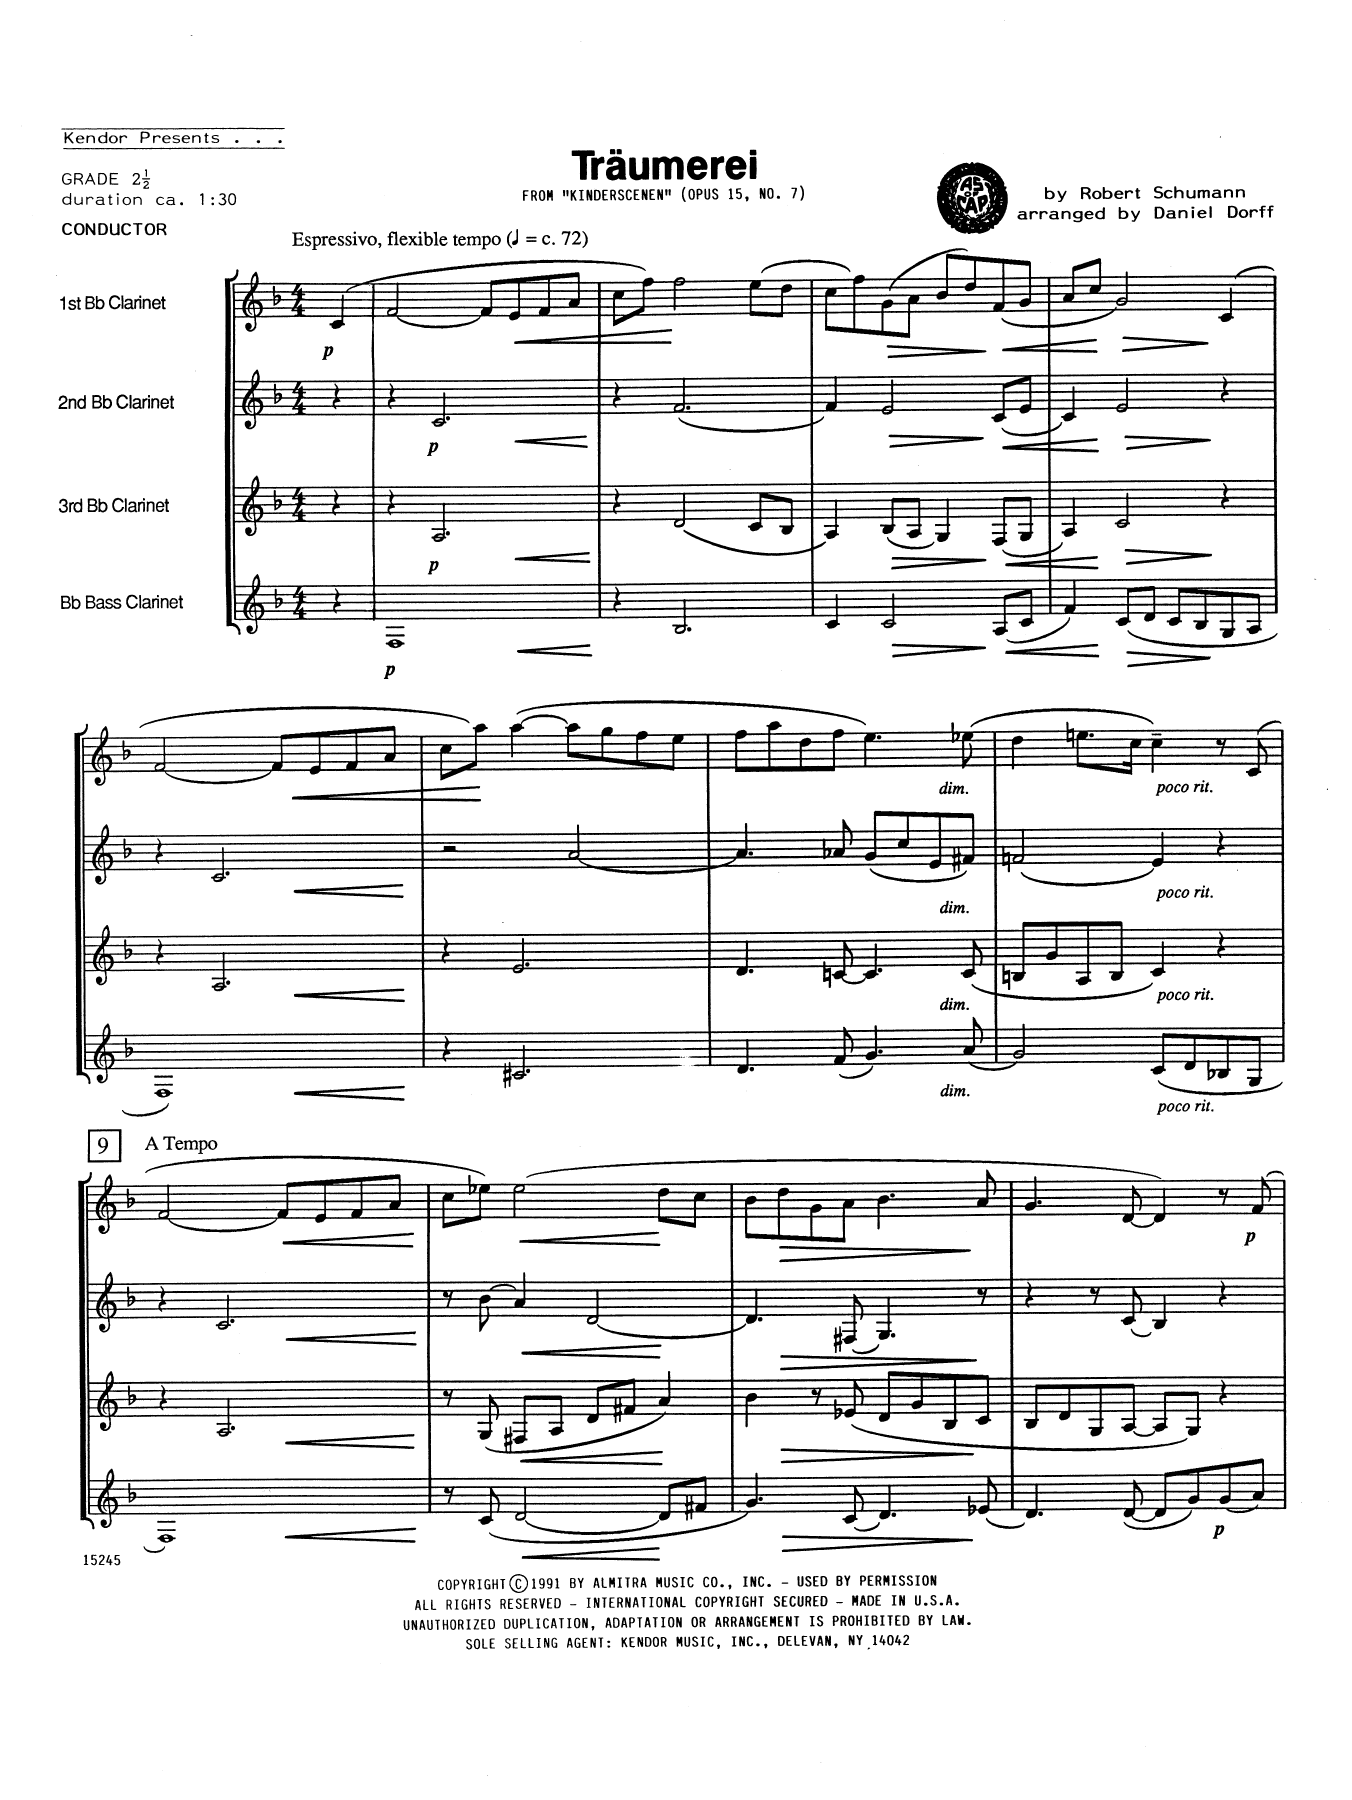 Traumerei - Full Score (Woodwind Ensemble) von Daniel Dorff